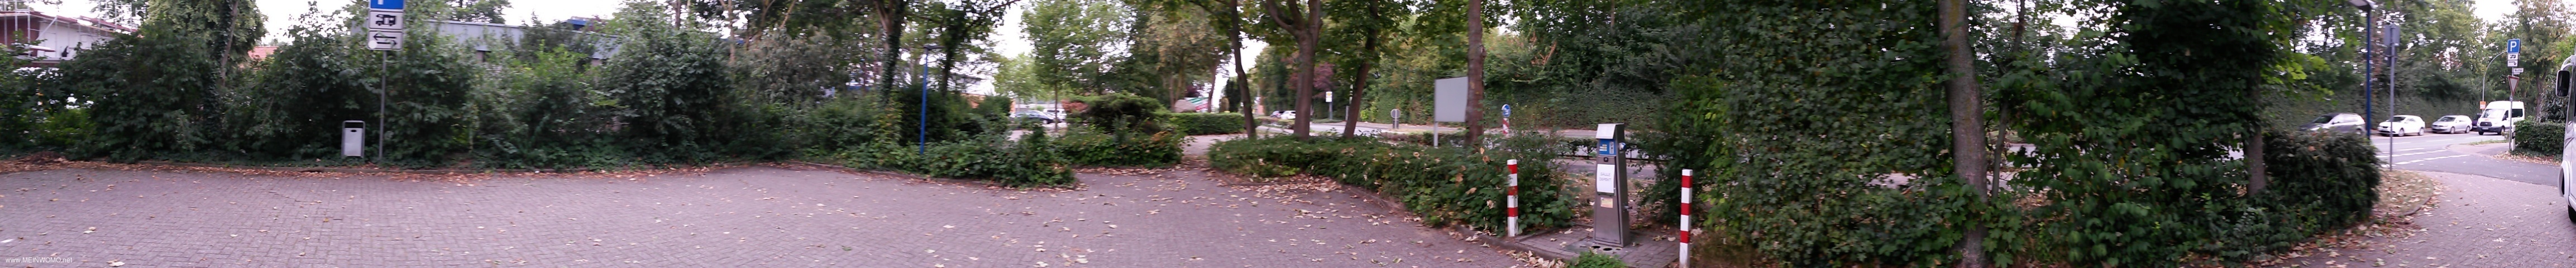  Sendenhorst stng parkeringsplats